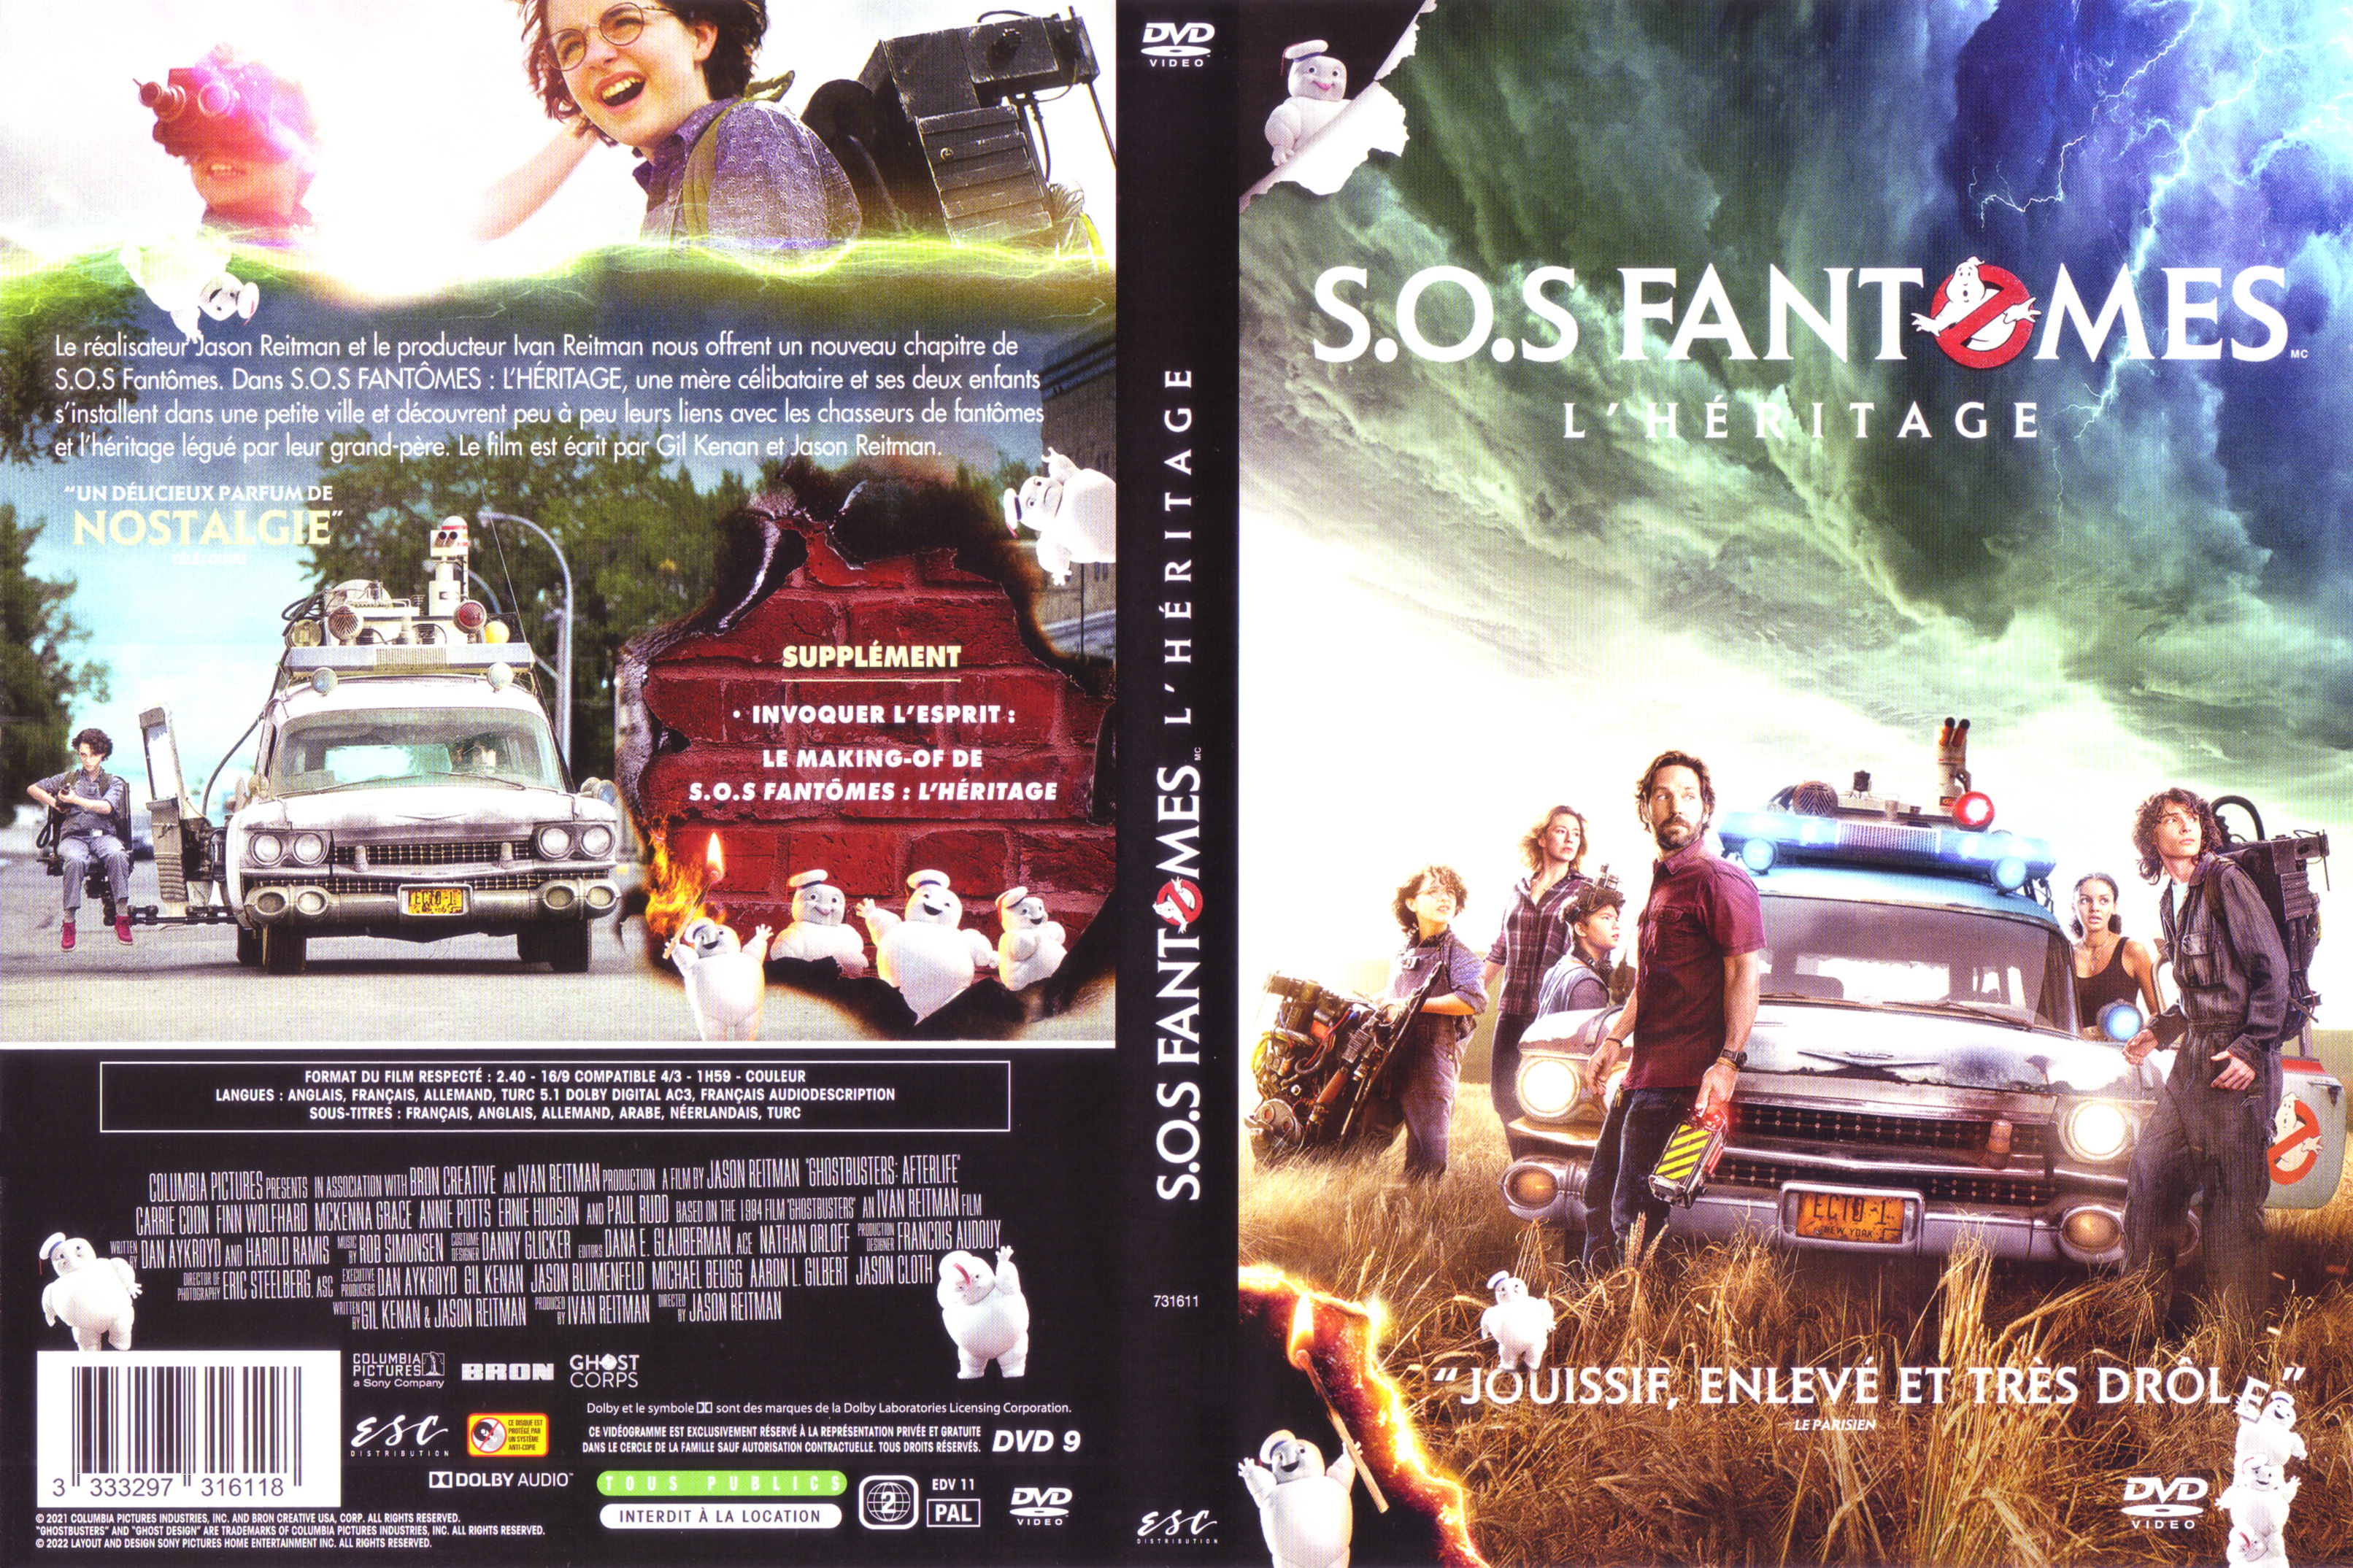 Jaquette DVD SOS Fantomes L